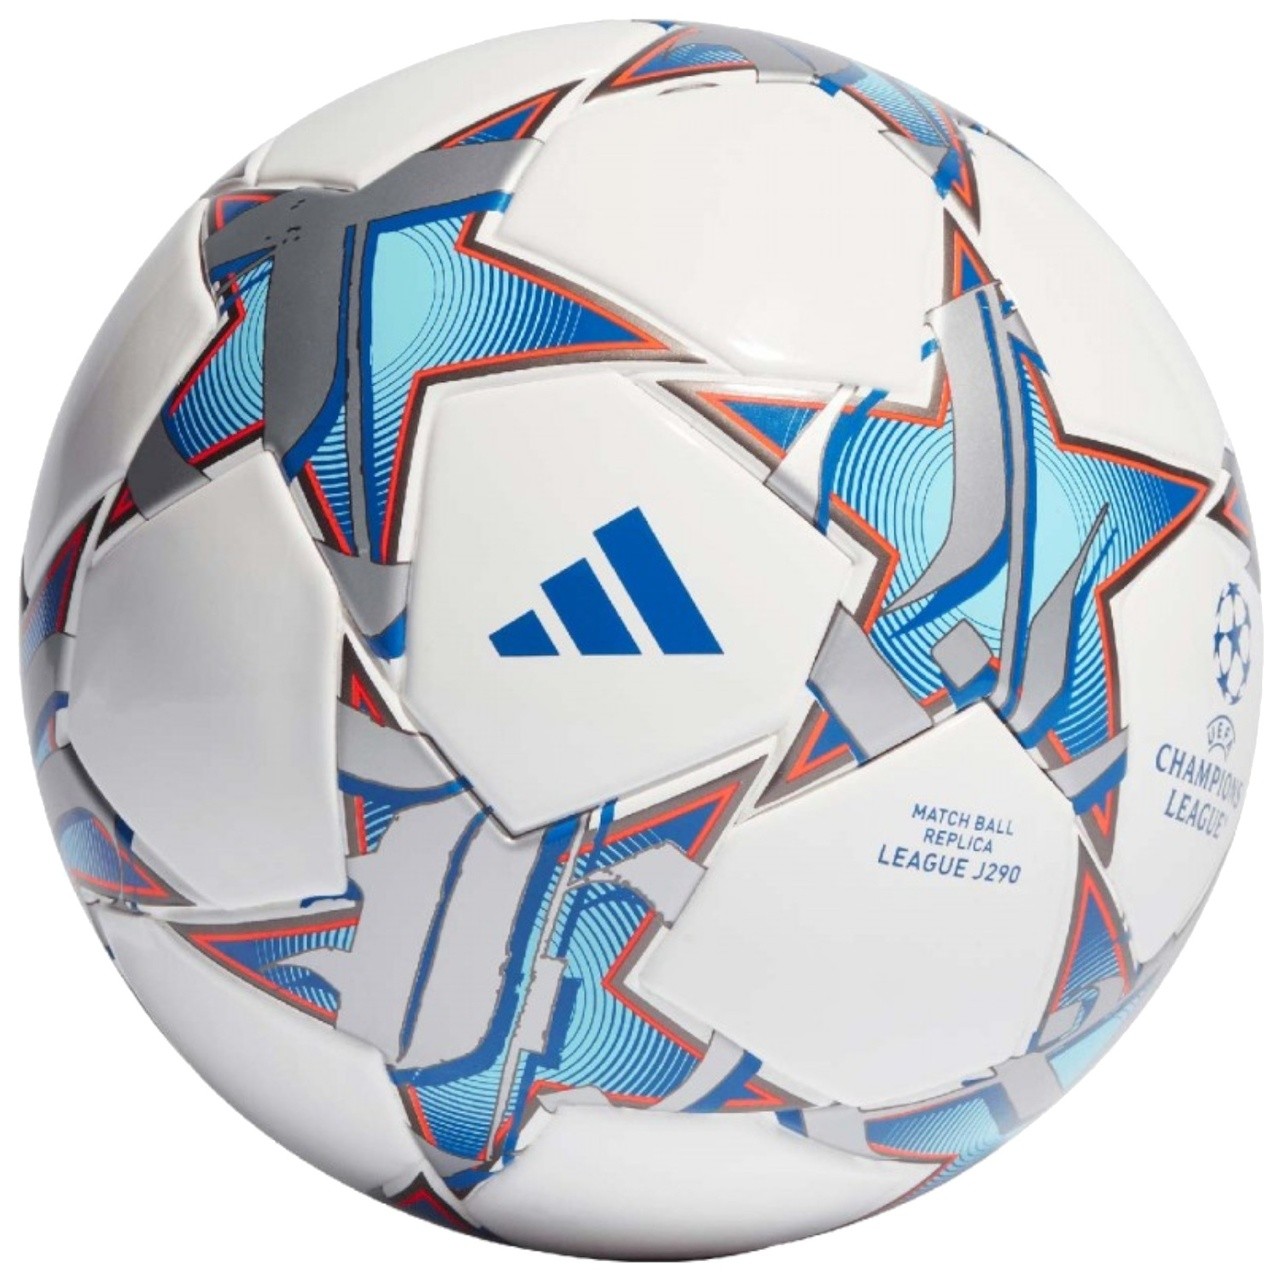 Мяч футбольный Adidas UCL 23/24 Match Ball Replica League J290 размер 4 - фото